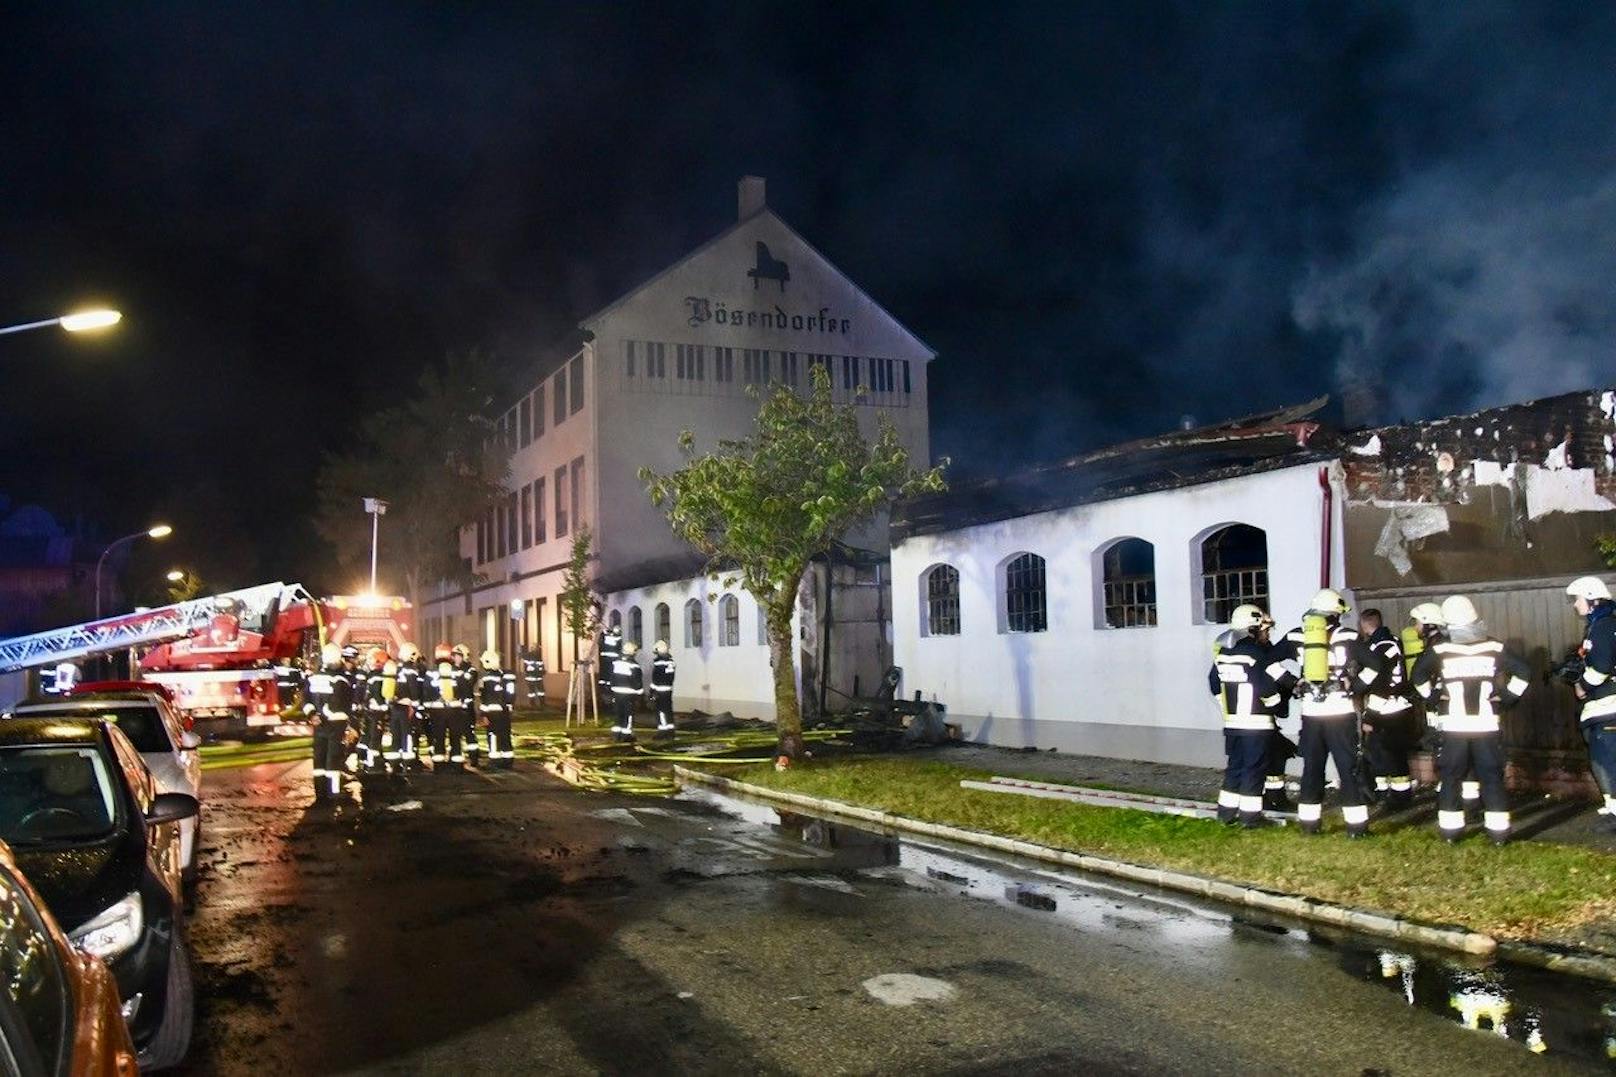 Großeinsatz in Niederösterreich! In einem Nebengebäude in der Bösendorfer-Klavierfabrik im Herzen von Wiener Neustadt brach am Dienstagabend ein Feuer aus. Insgesamt waren vier Feuerwehren mit 15 Fahrzeugen und 80 Einsatzkräften vor Ort.